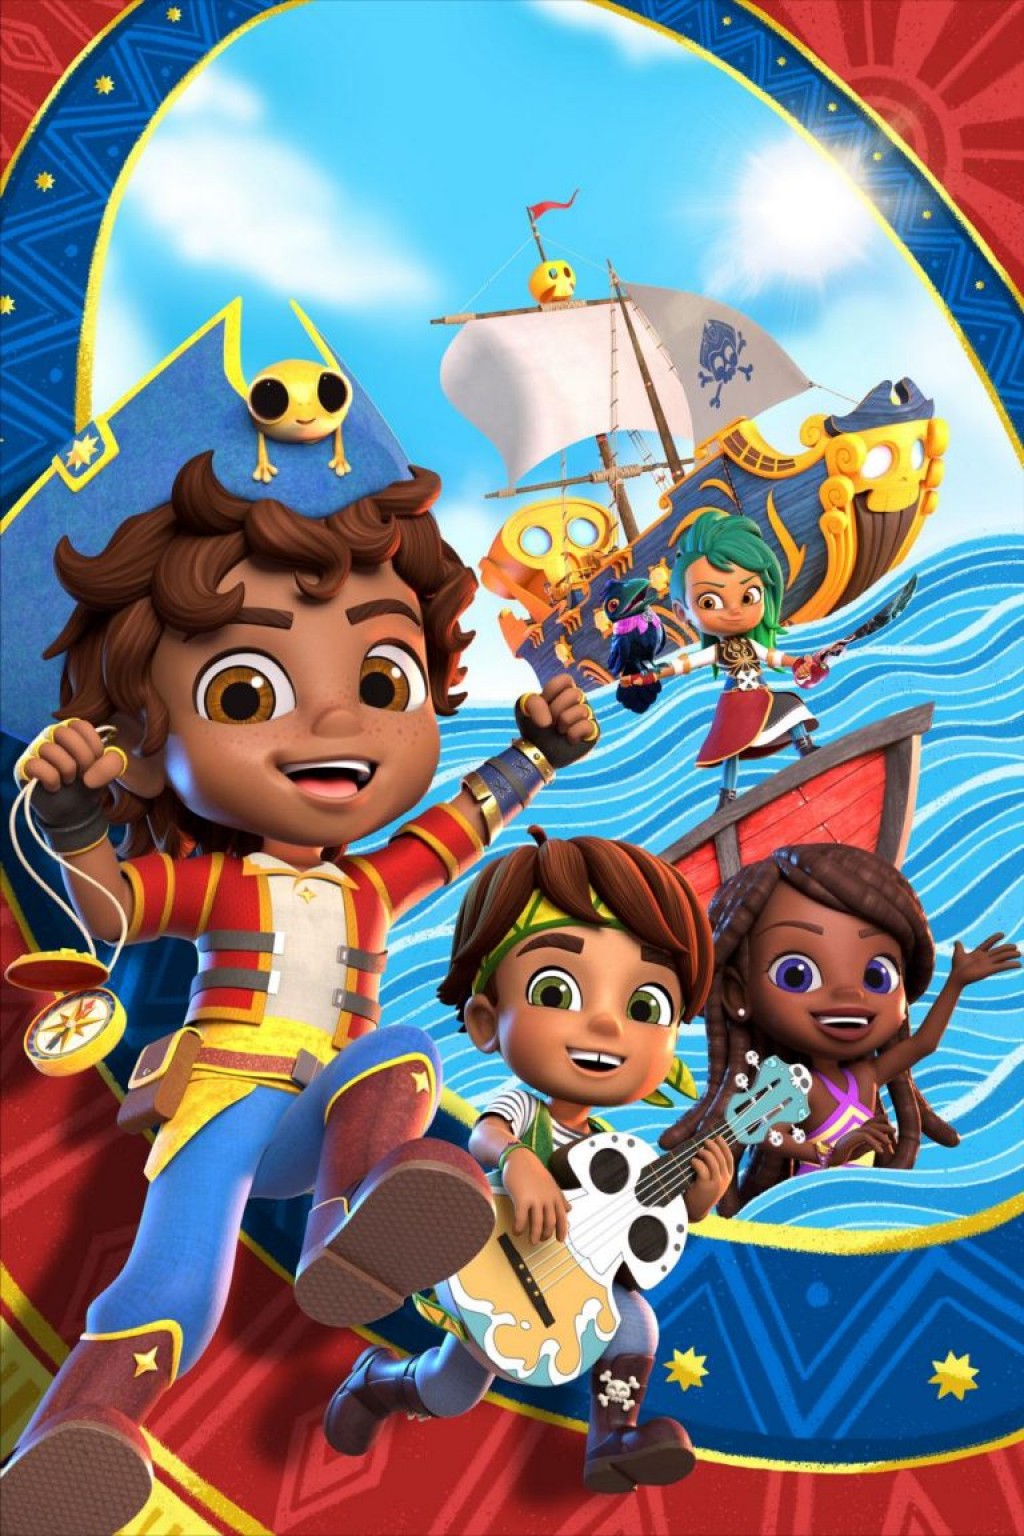 Nickelodeon estrena "Santiago of the Seas", una nueva serie bilingüe